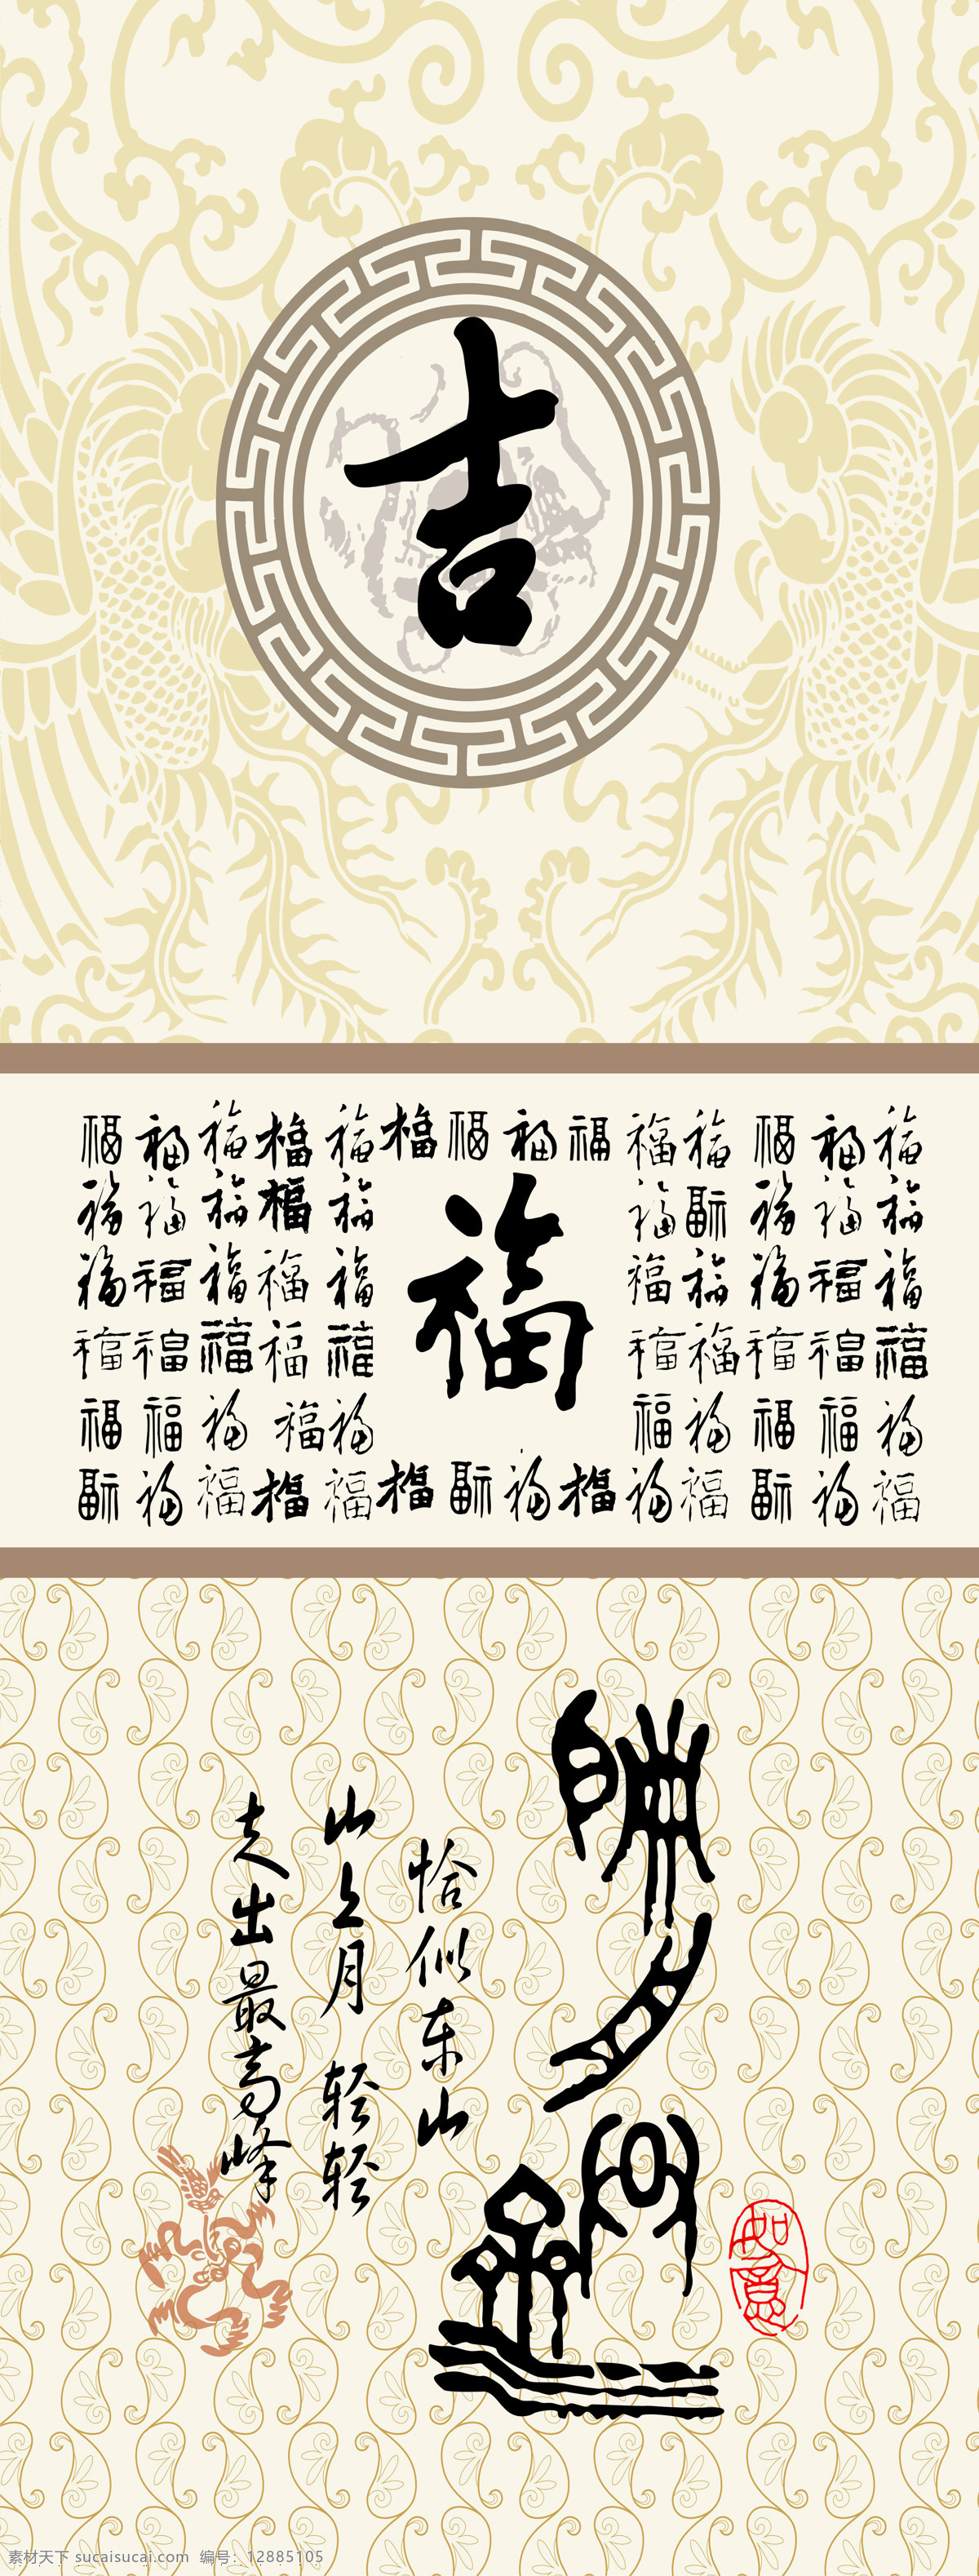 移门 图 99 背景 福 古典 花纹 色彩 水墨 文字 家居装饰素材